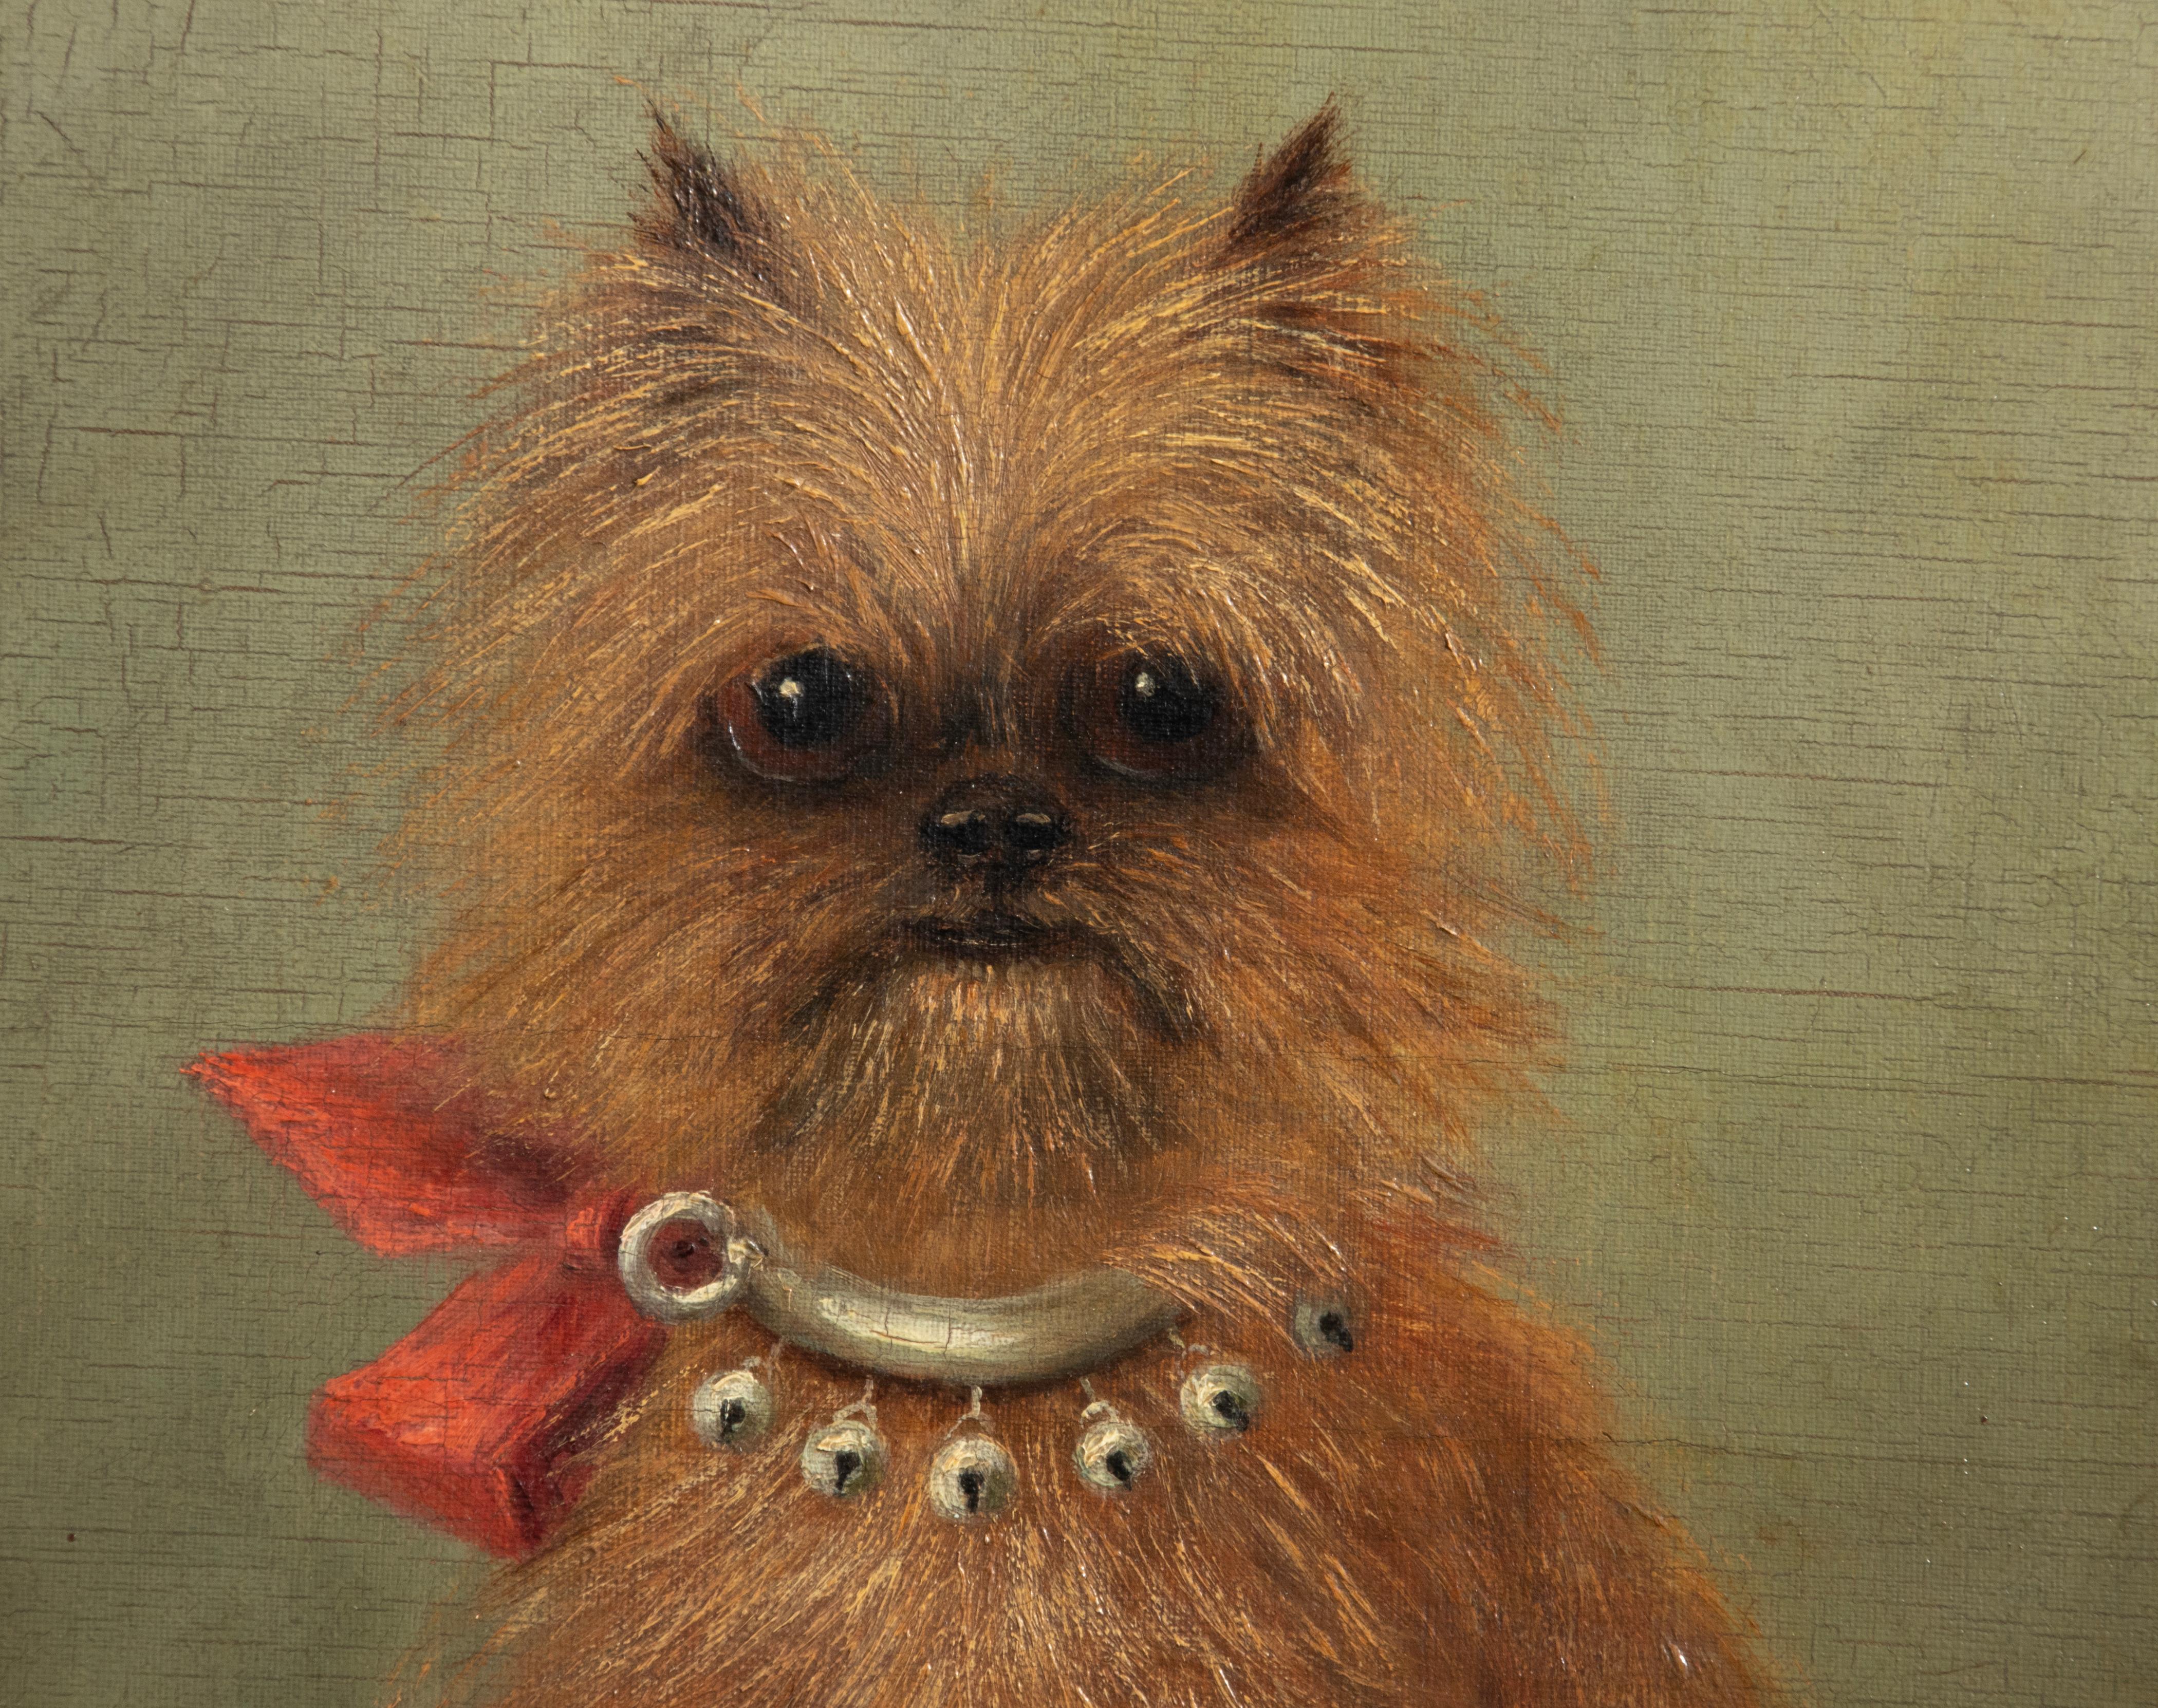 Hand-Painted 19th Century Portrait of a Griffon Bruxellois Dog Named Mouche Cora, Zélia Klerx